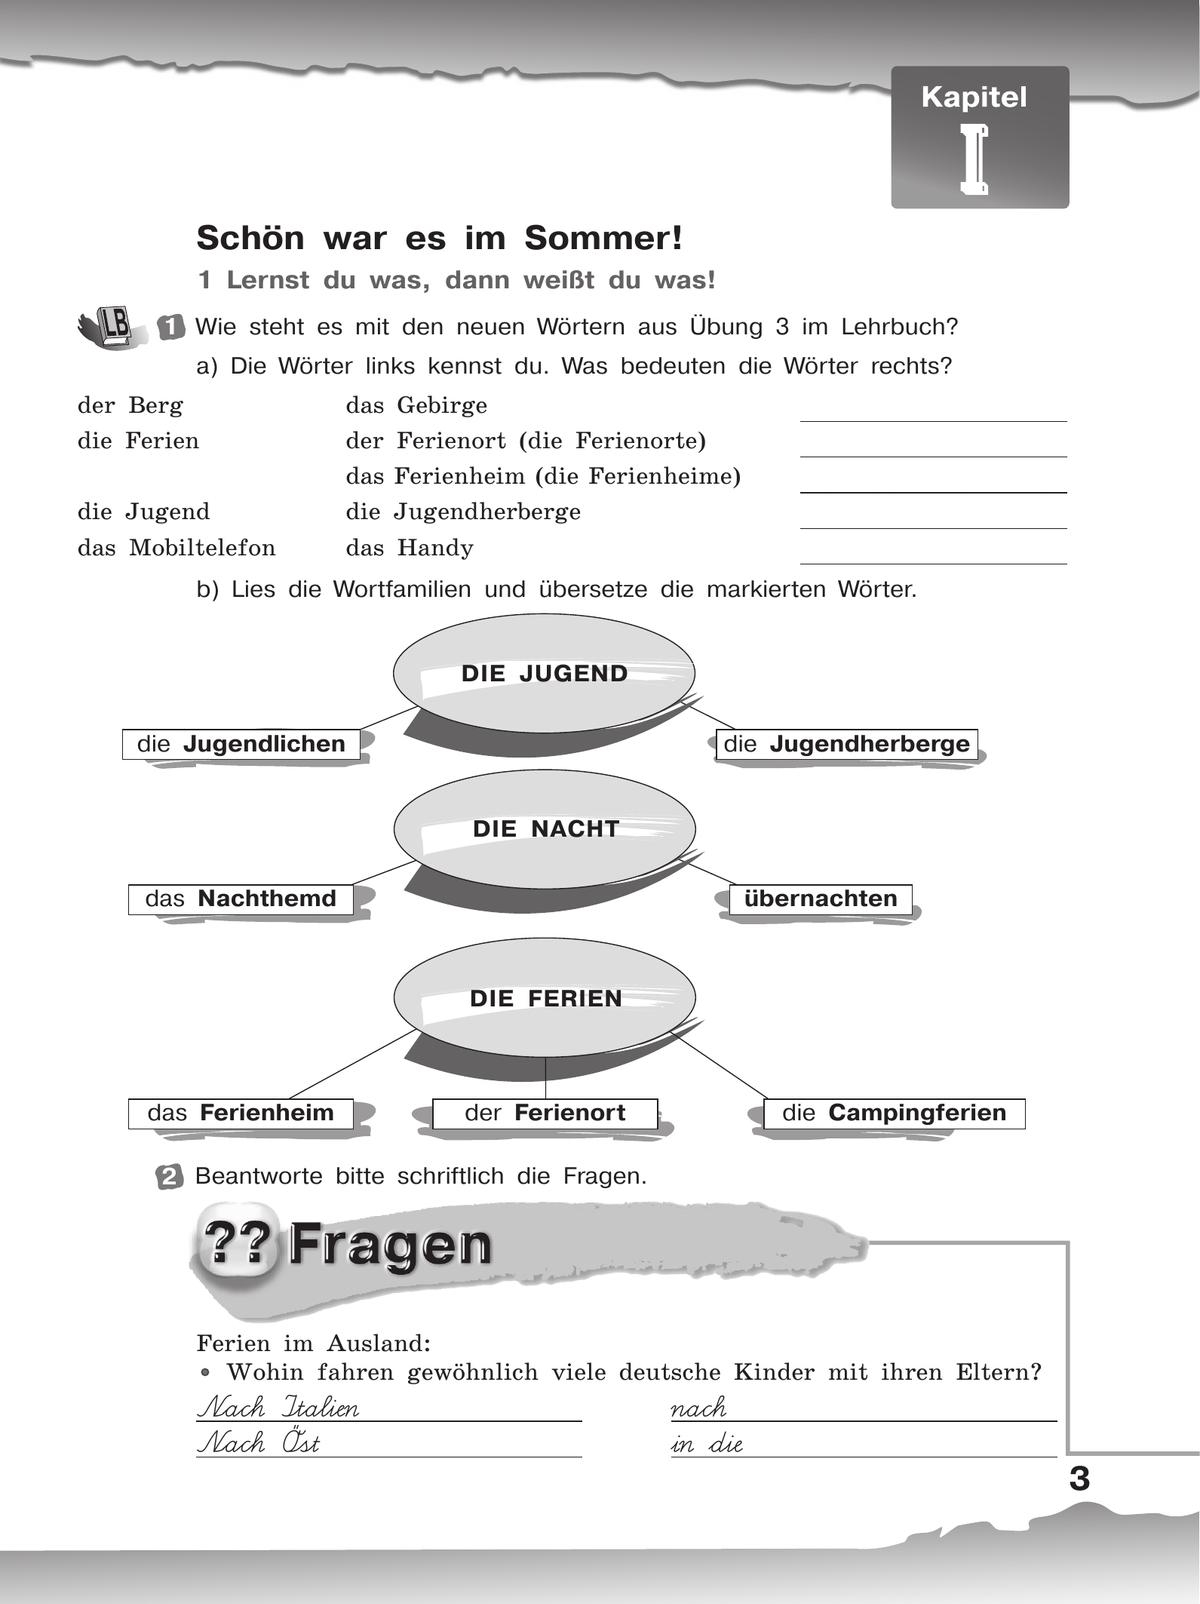 Немецкий язык. Рабочая тетрадь. 8 класс 11